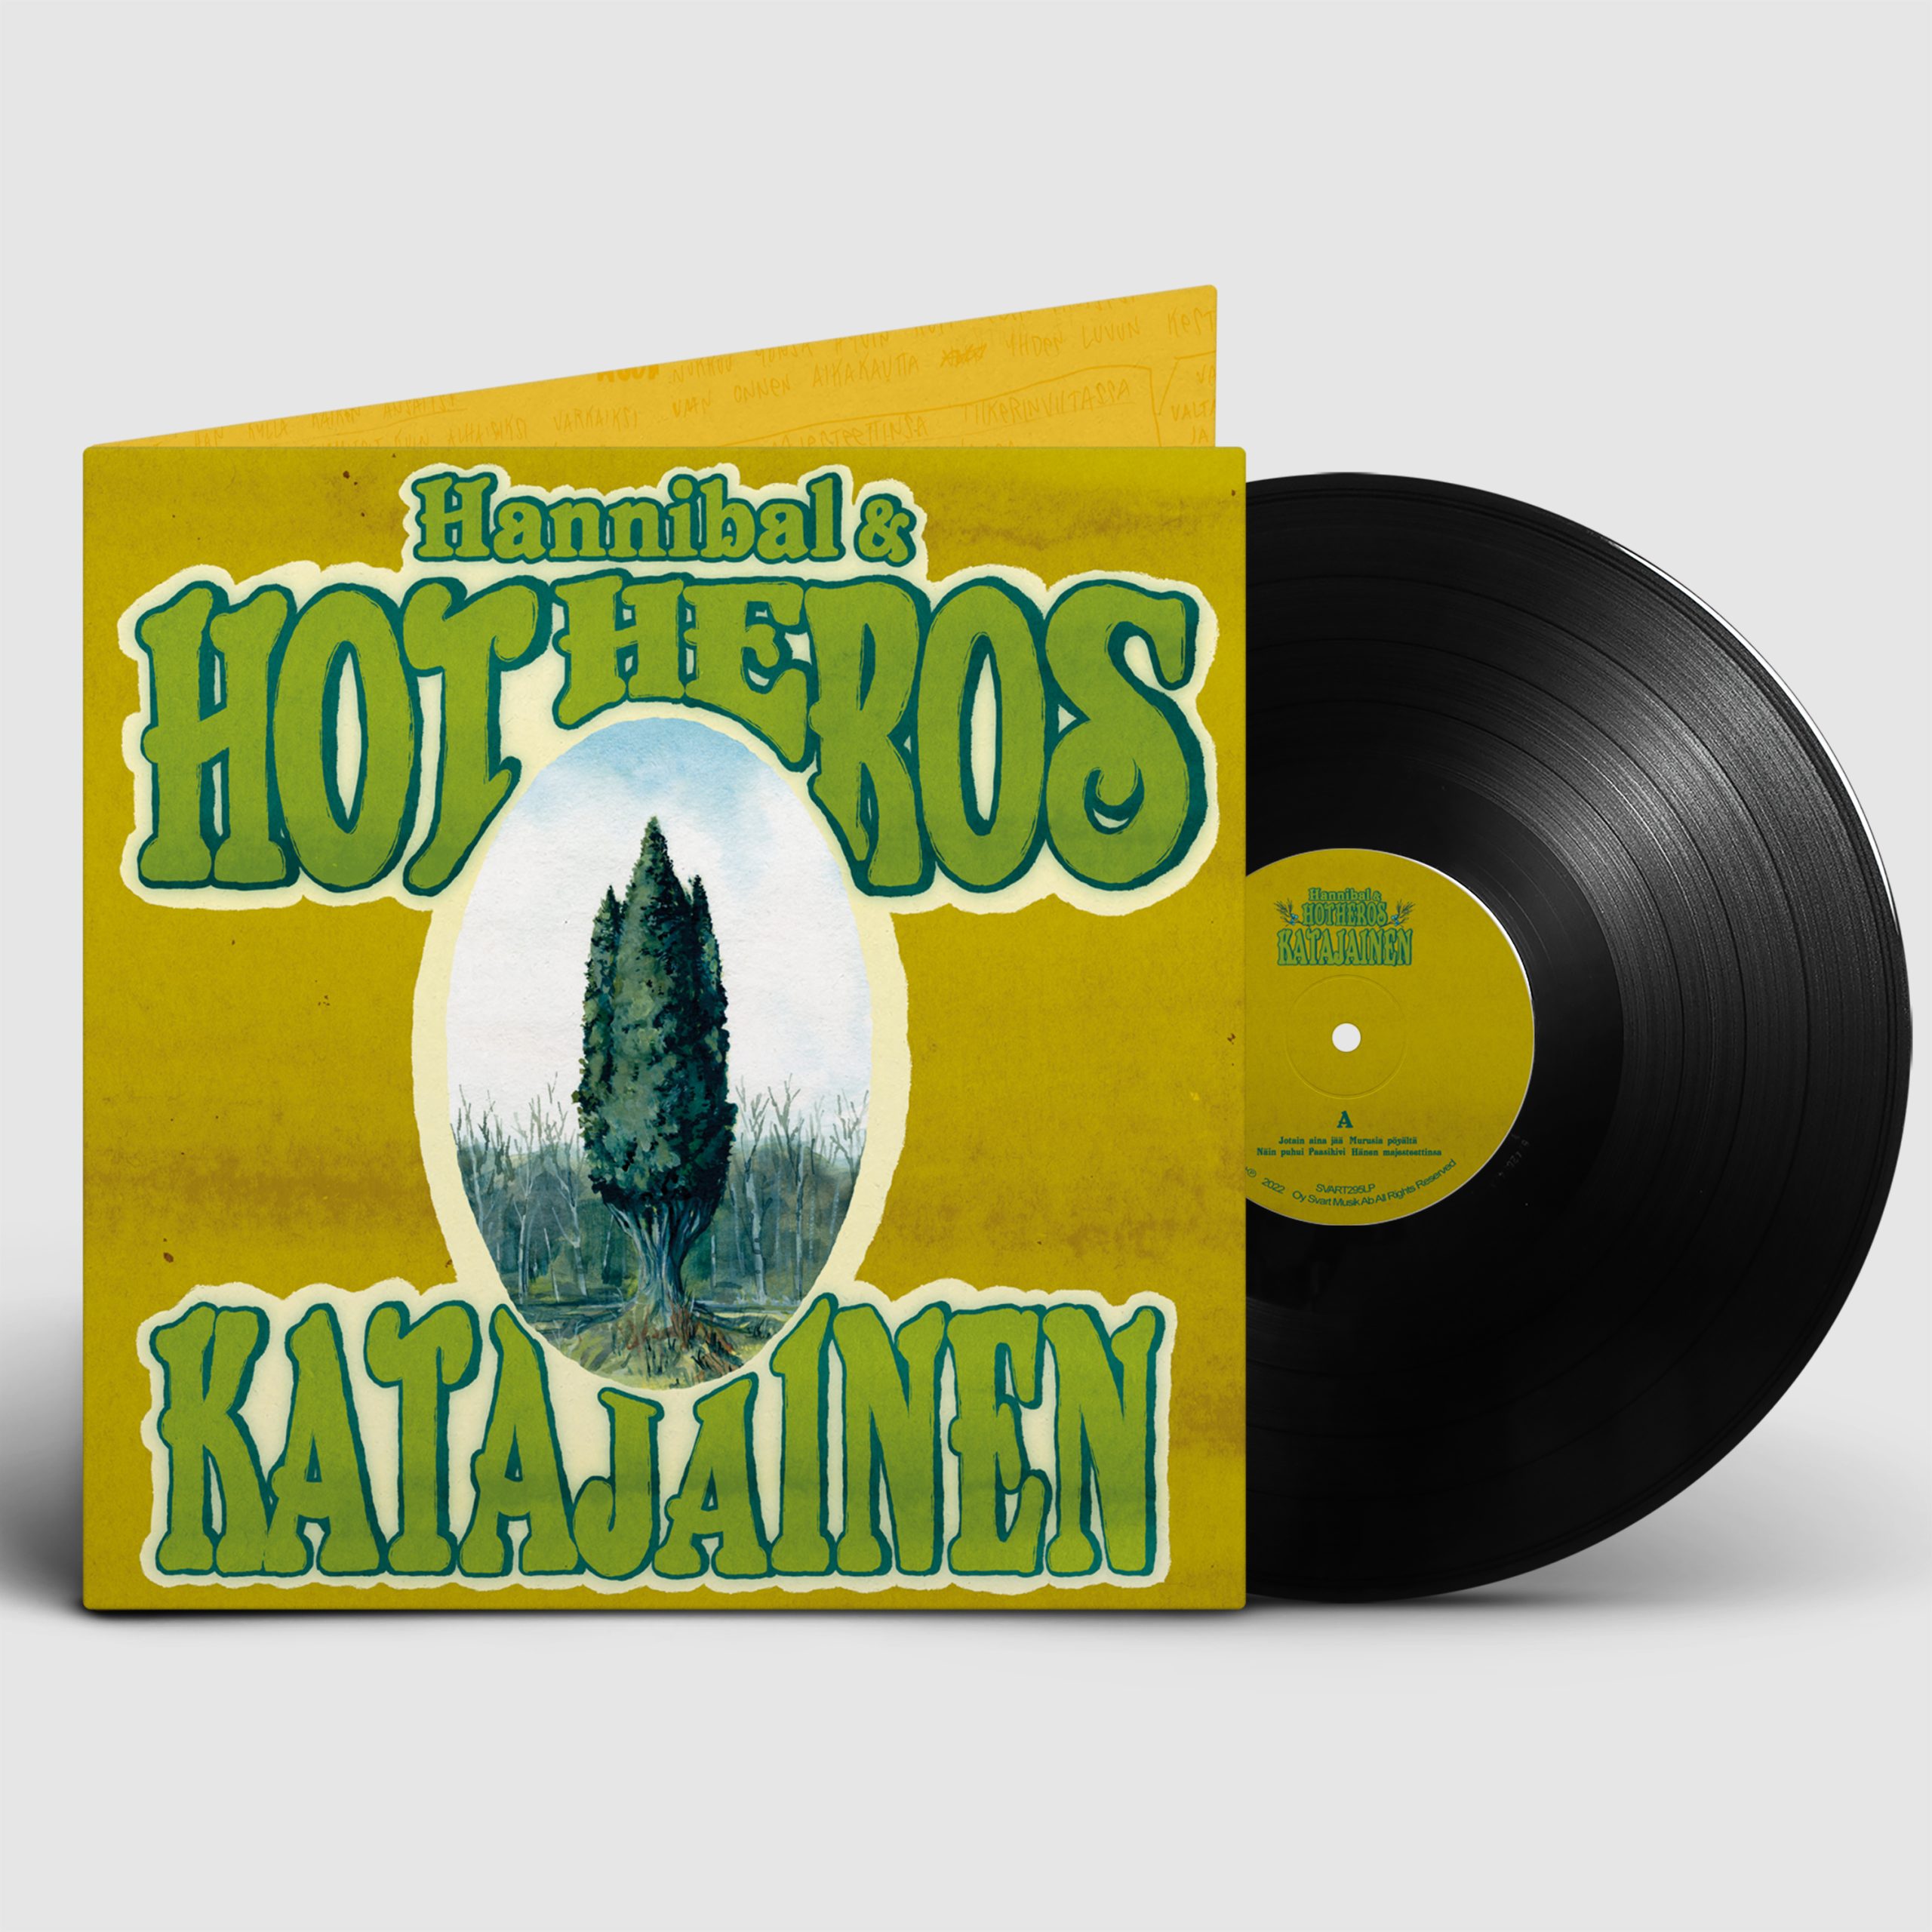 Hannibal & Hot Heros - Katajainen - LP (uusi)